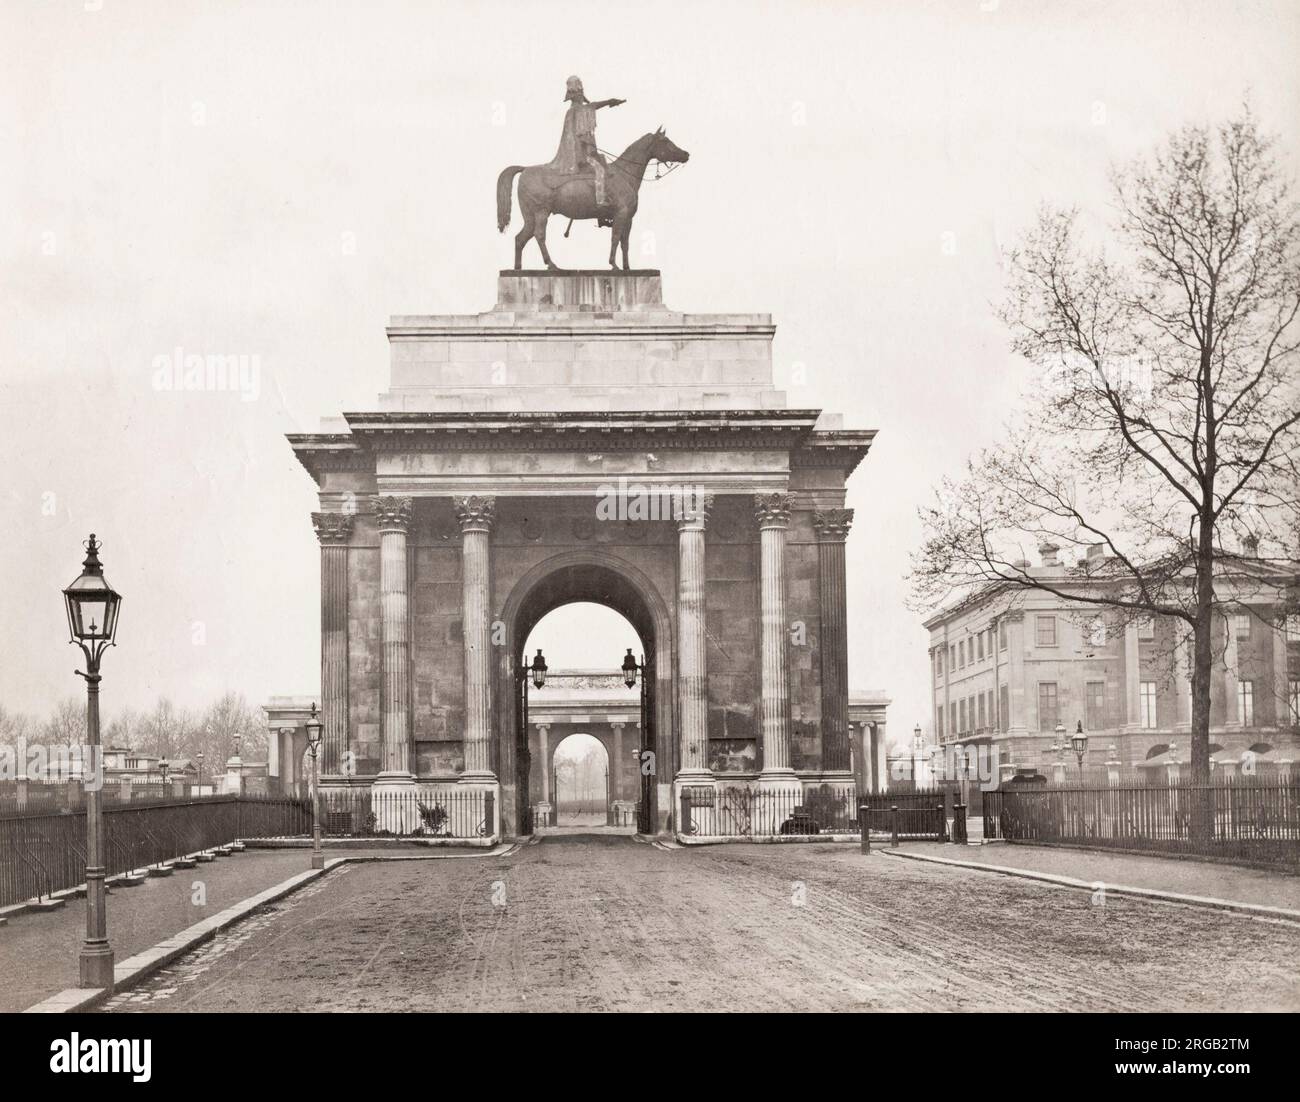 Photographie du XIXe siècle : Wellington Arch, également connu sous le nom de Constitution Arch ou de Green Park Arch, est une arche triomphale classée de catégorie I par Decimus Burton qui forme une pièce maîtresse de Hyde Park Corner dans le centre de Londres, entre les coins de Hyde Park et Green Park Banque D'Images